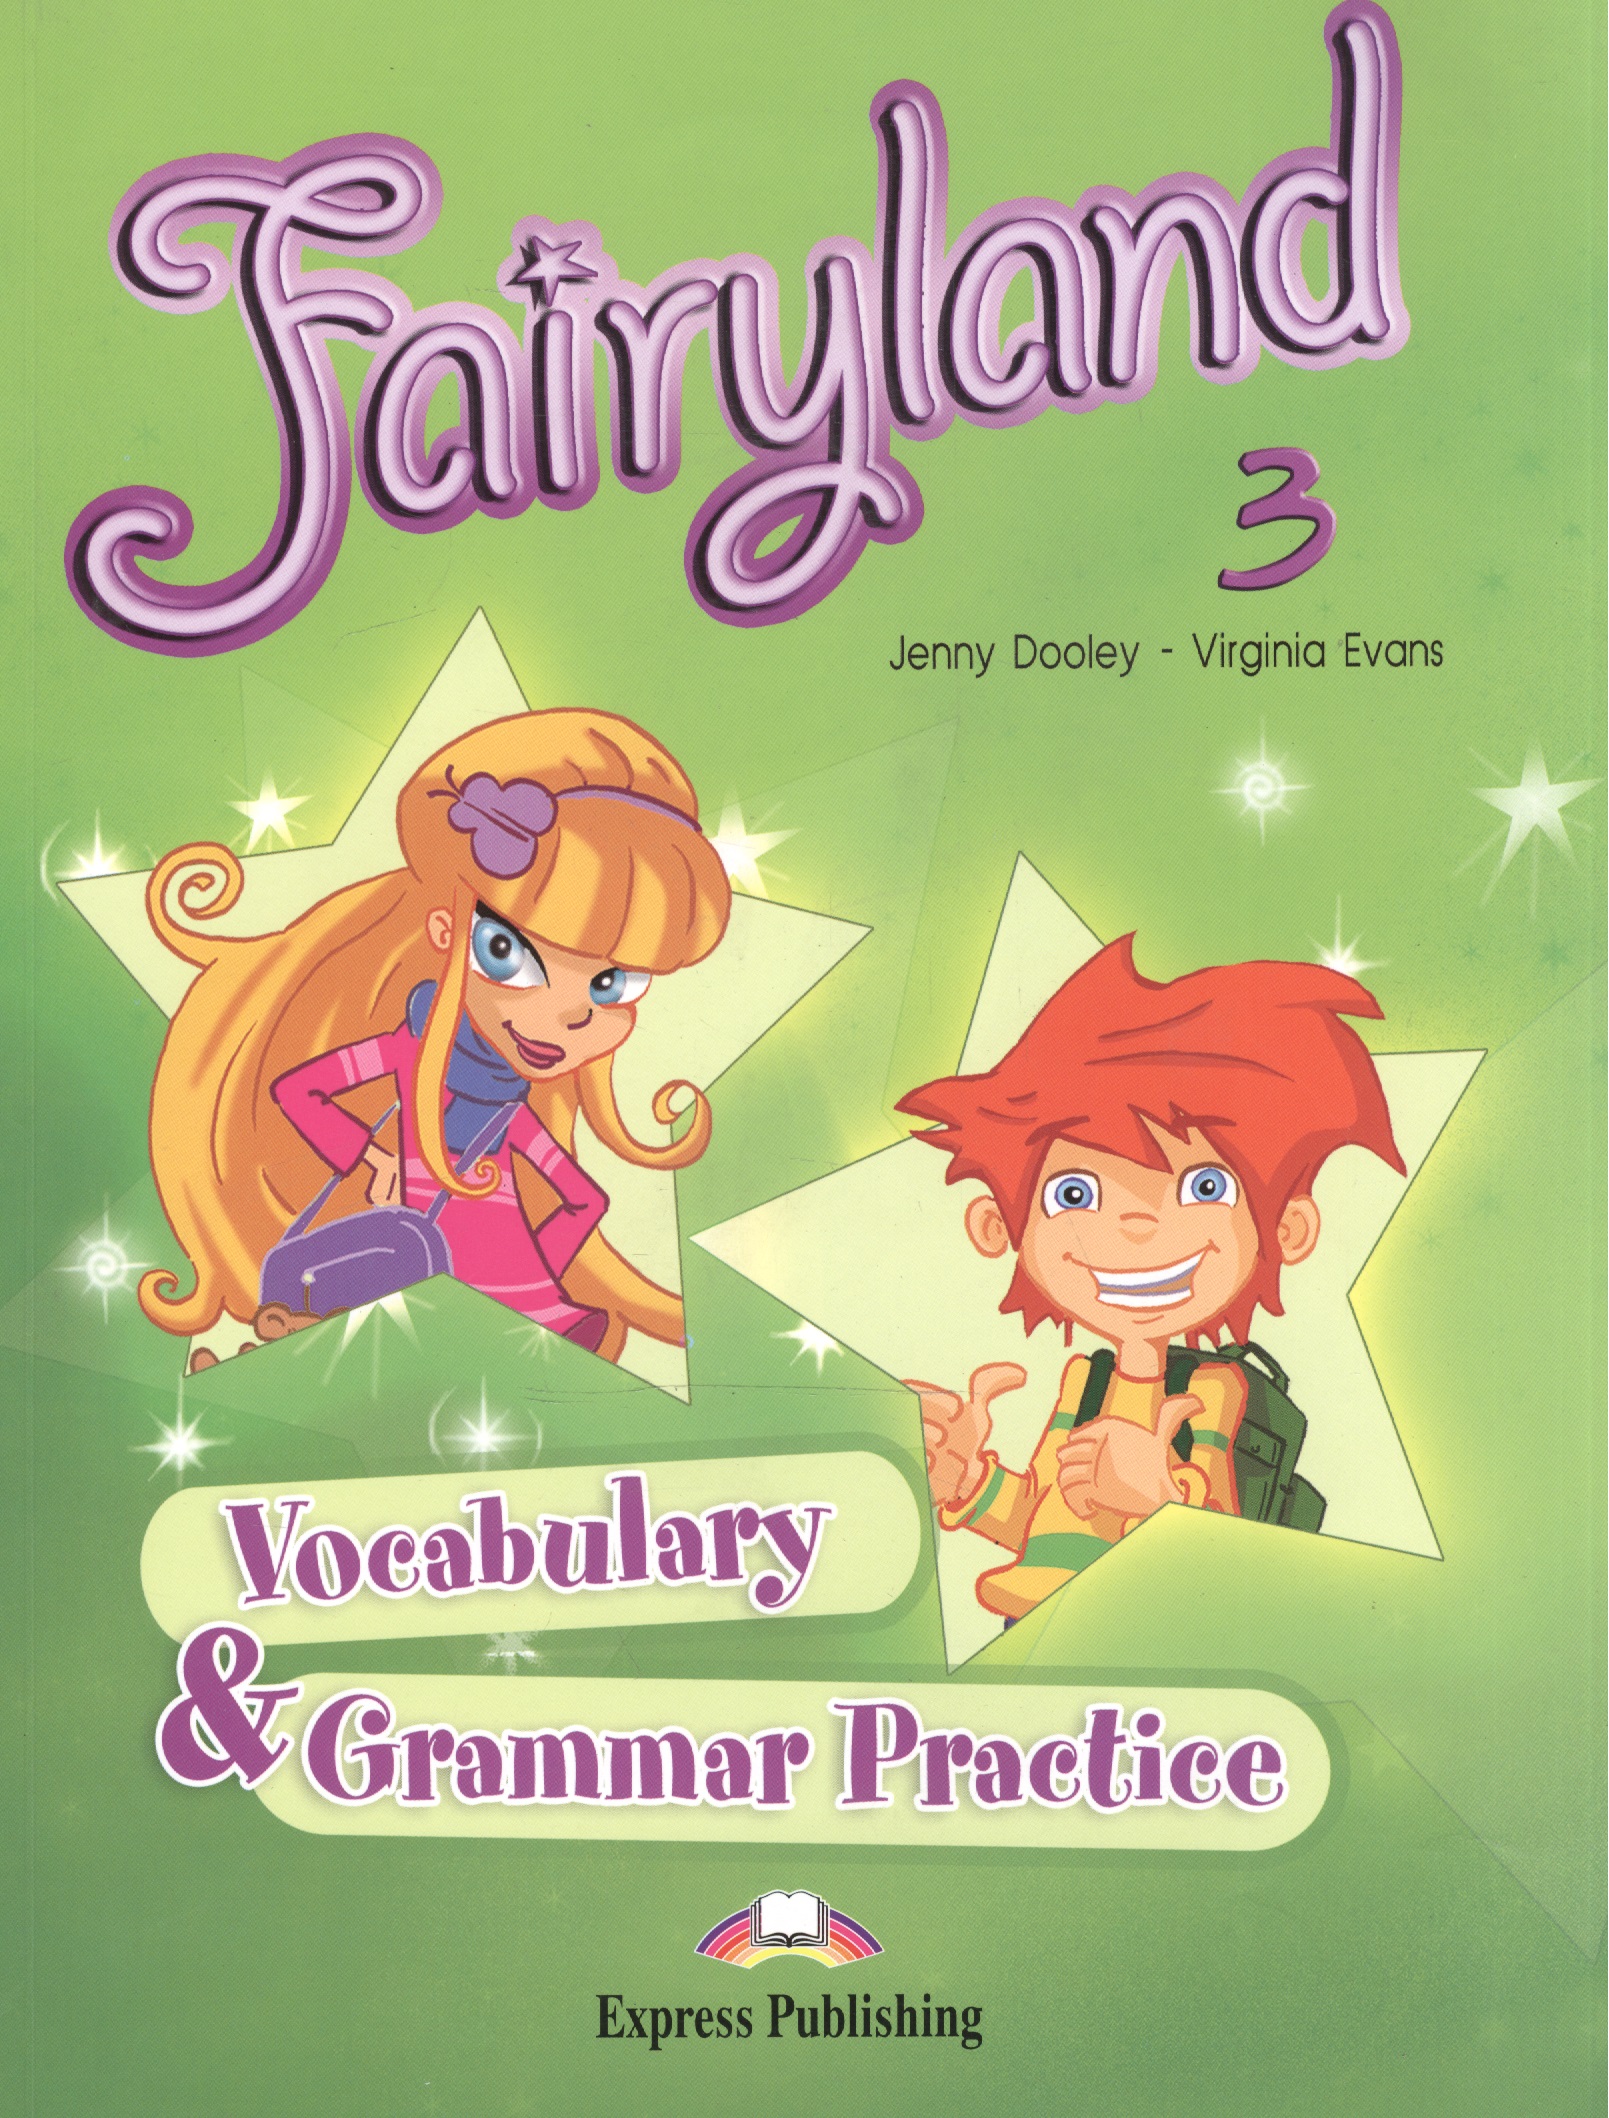 Эванс Вирджиния Fairyland 3. Vocabulary & Grammar Practice. Beginner. Сборник лексических и граммат. упражнений. эванс вирджиния fairyland 3 vocabulary